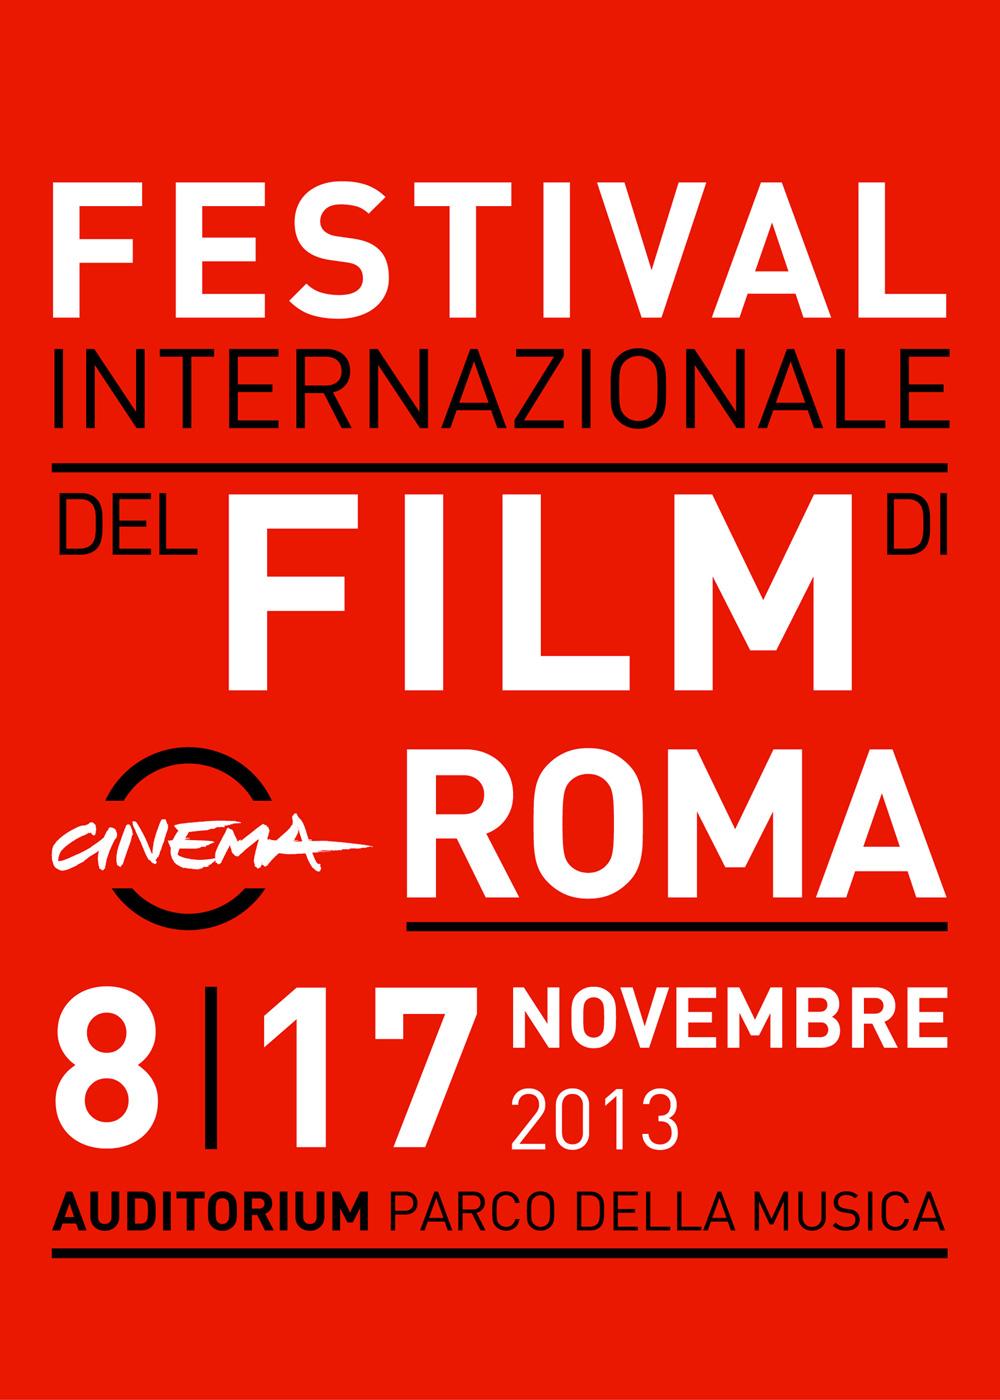 Festival di Roma 2013, al via